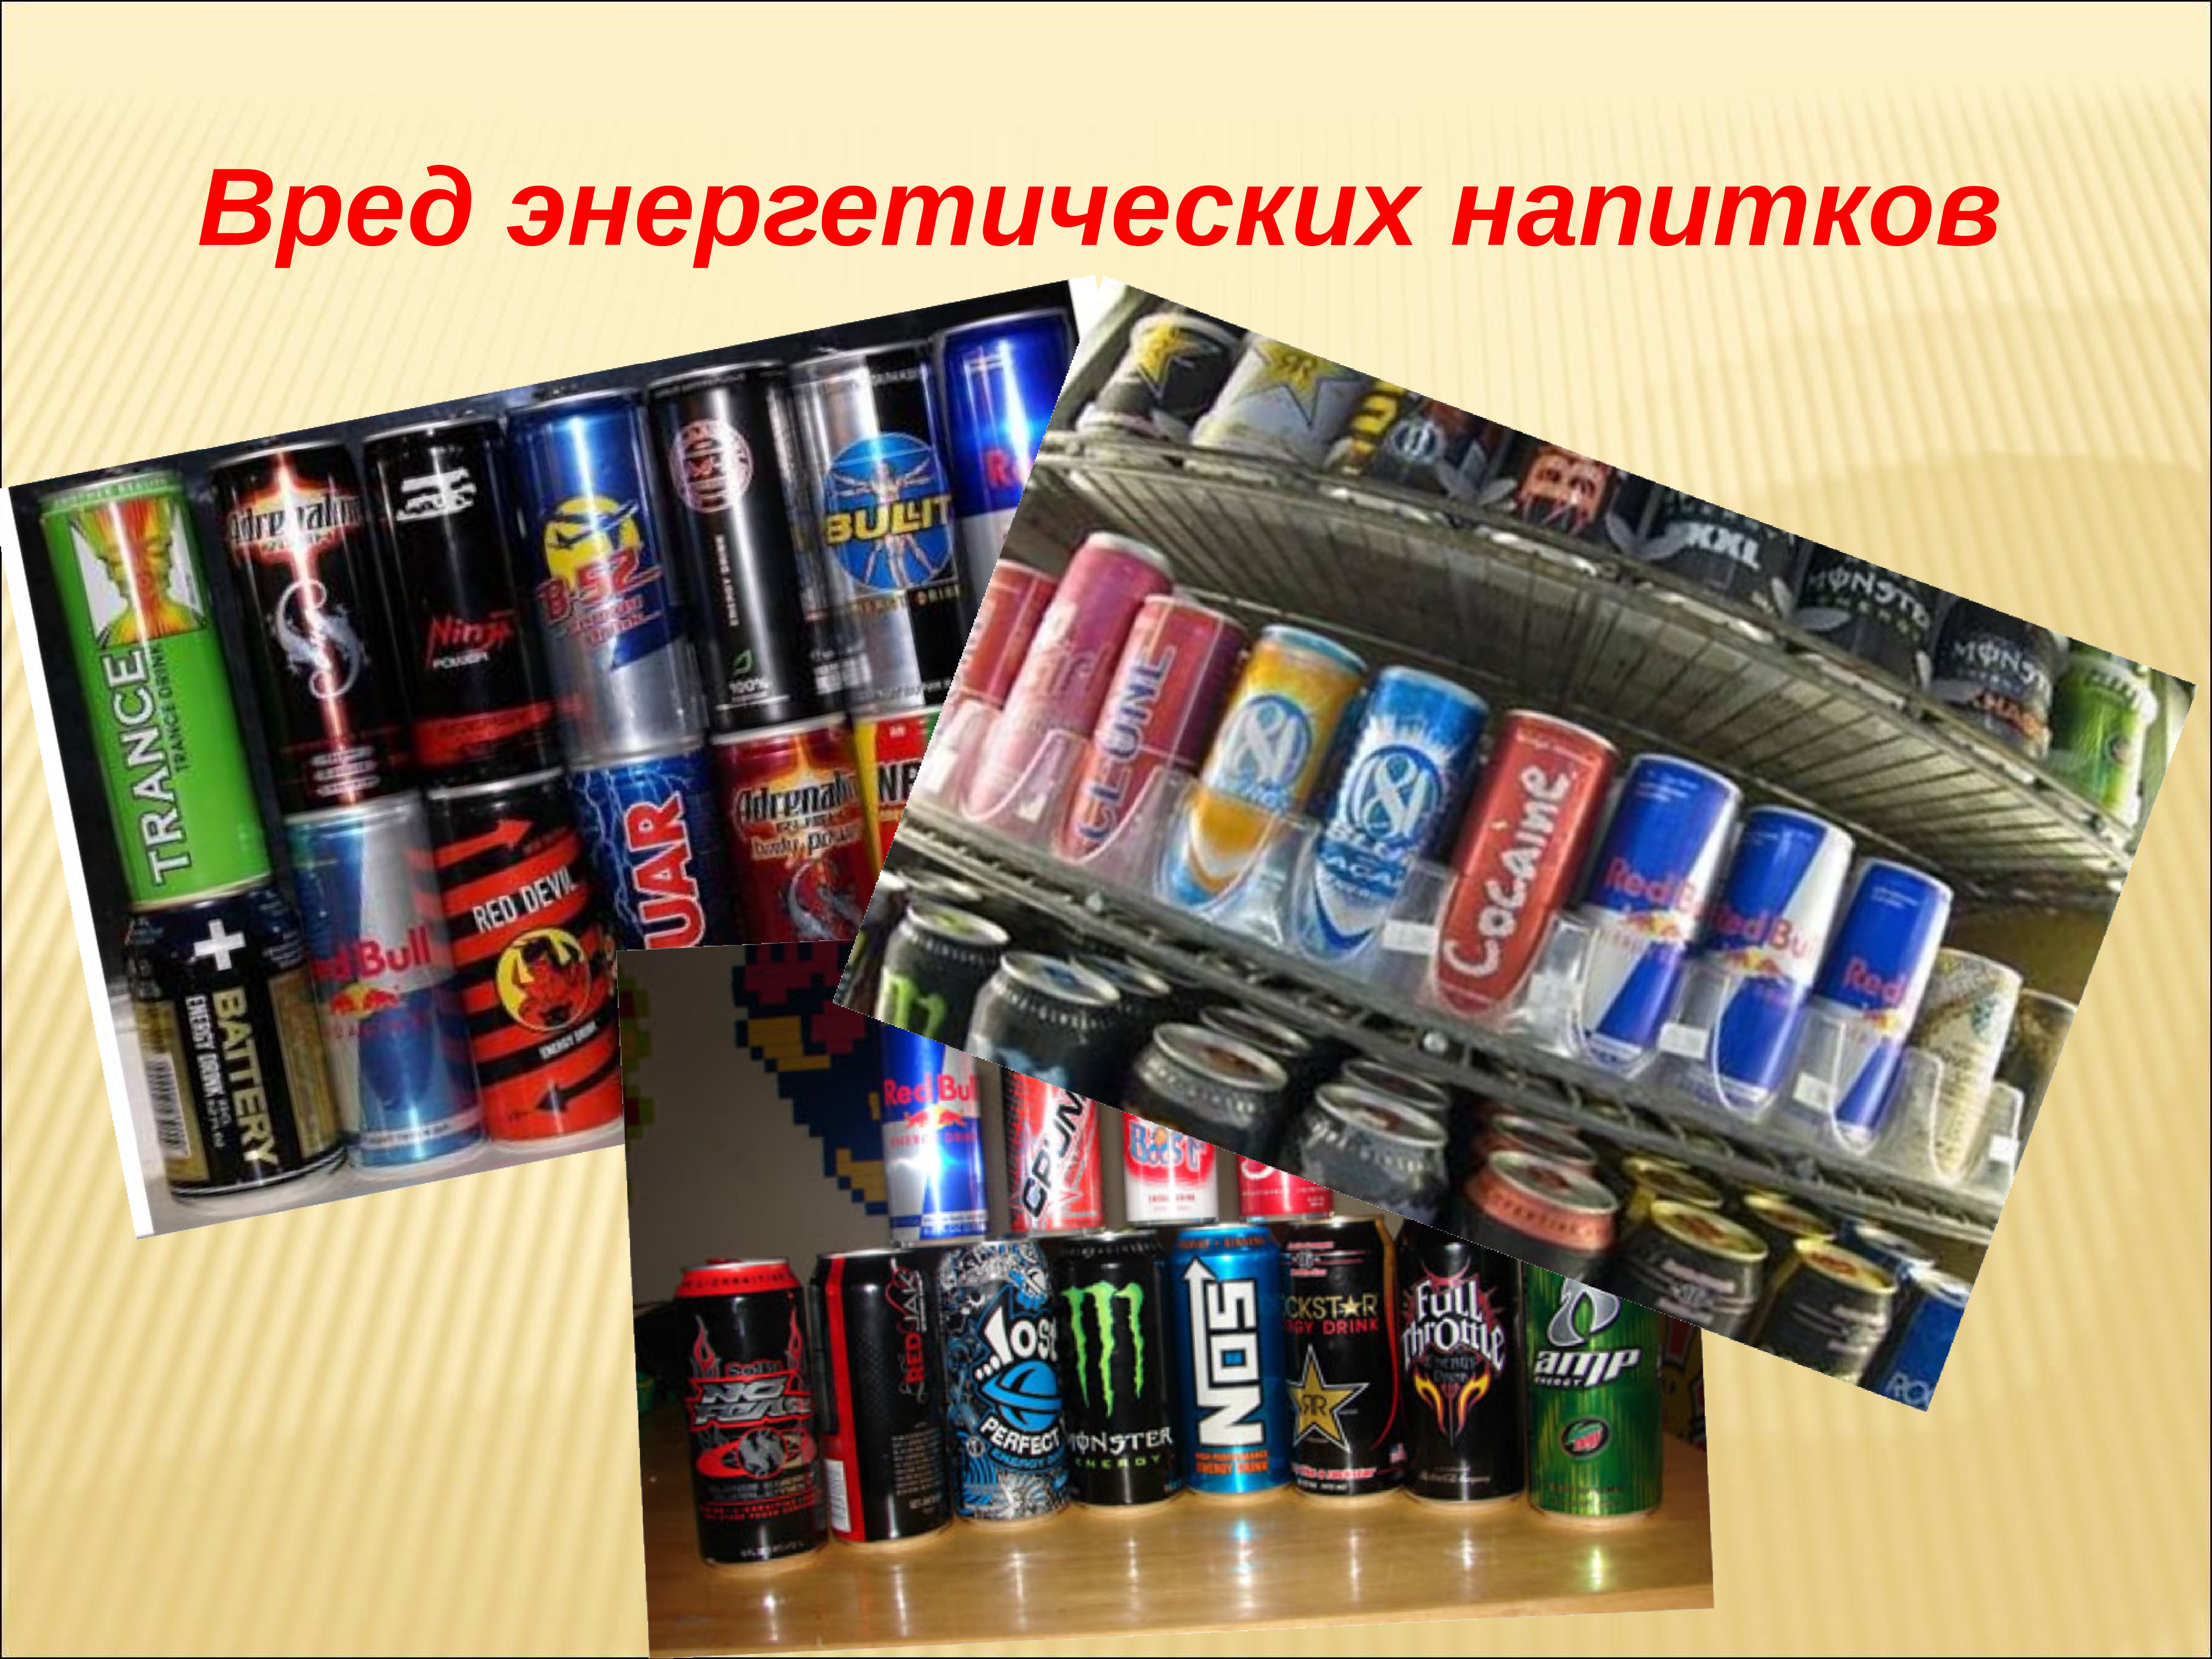 Виды энергетиков в россии названия и фото